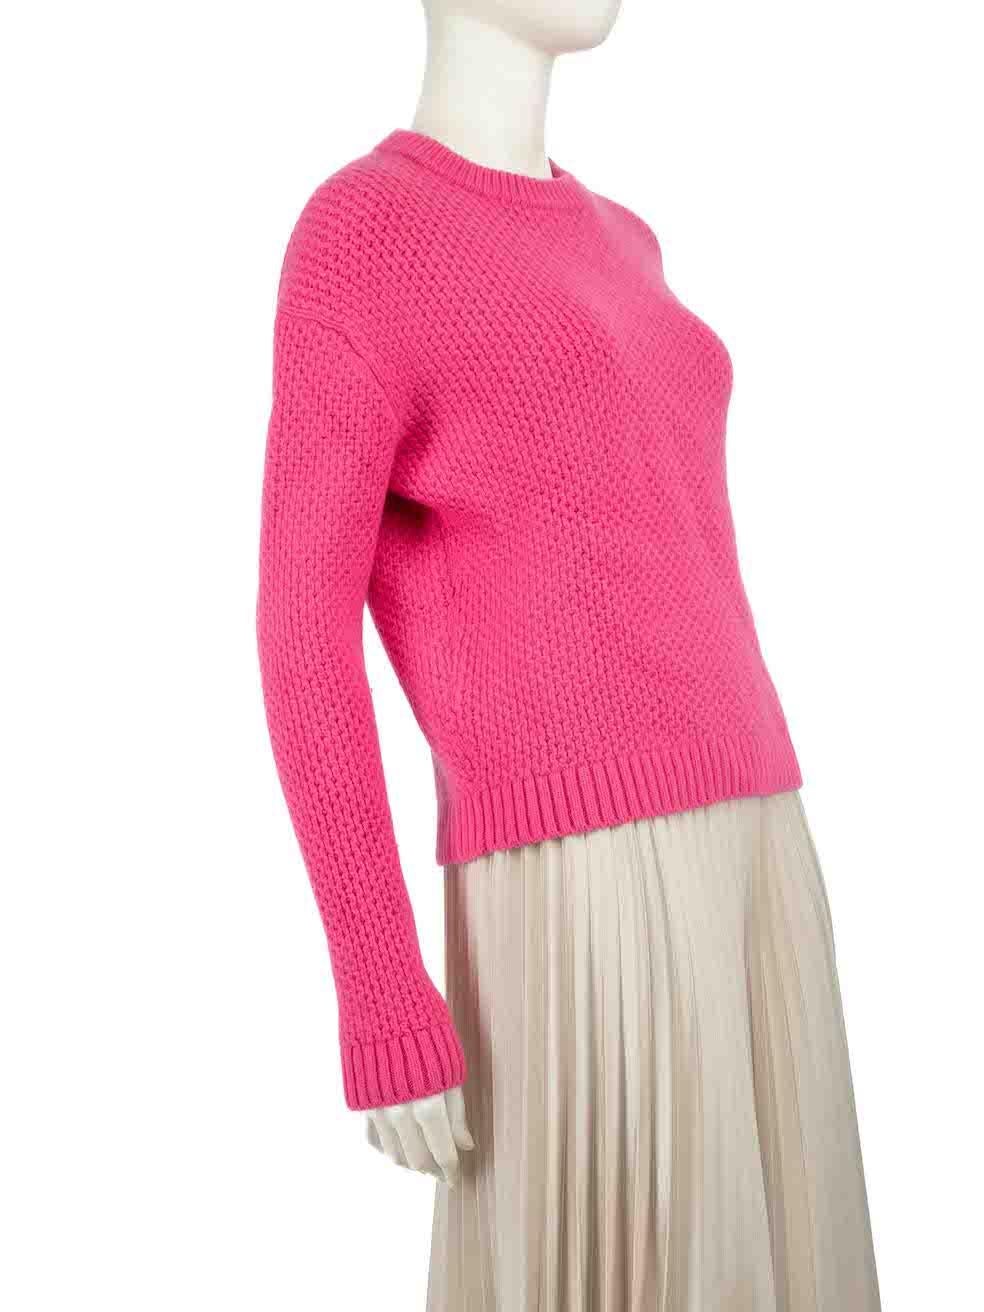 CONDIT ist sehr gut. Kaum sichtbare Abnutzungserscheinungen am Pullover sind bei diesem gebrauchten Prada Designer-Wiederverkaufsartikel zu erkennen.
 
 
 
 Einzelheiten
 
 
 2019
 
 Rosa
 
 Wolle
 
 Pullover stricken
 
 Lange Ärmel
 
